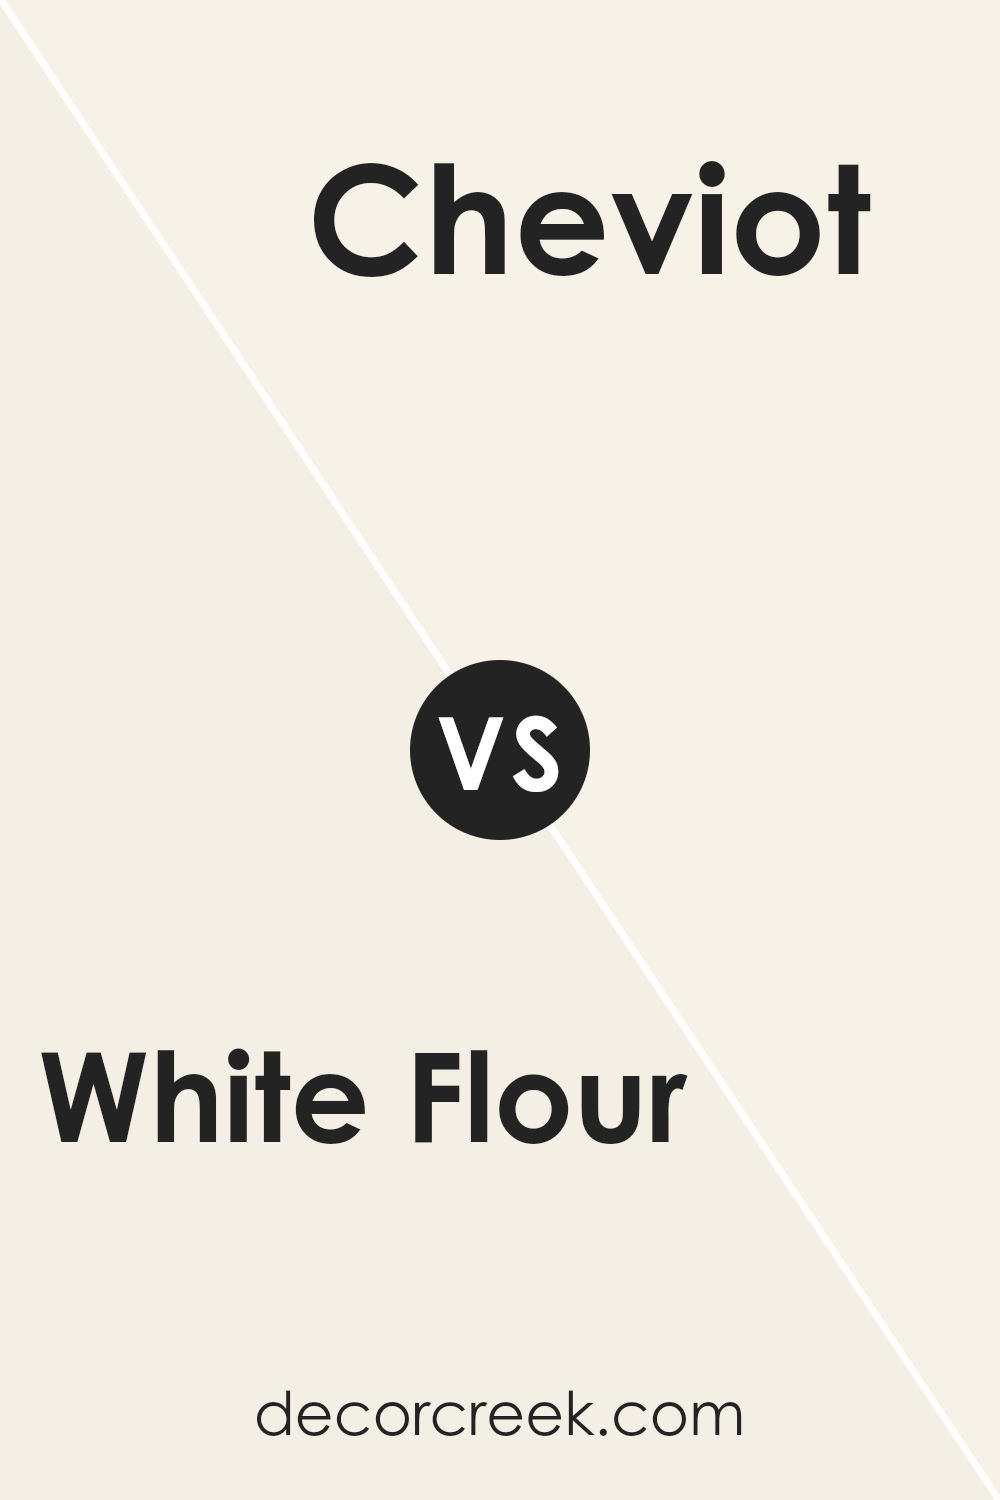 white_flour_sw_7102_vs_cheviot_sw_9503